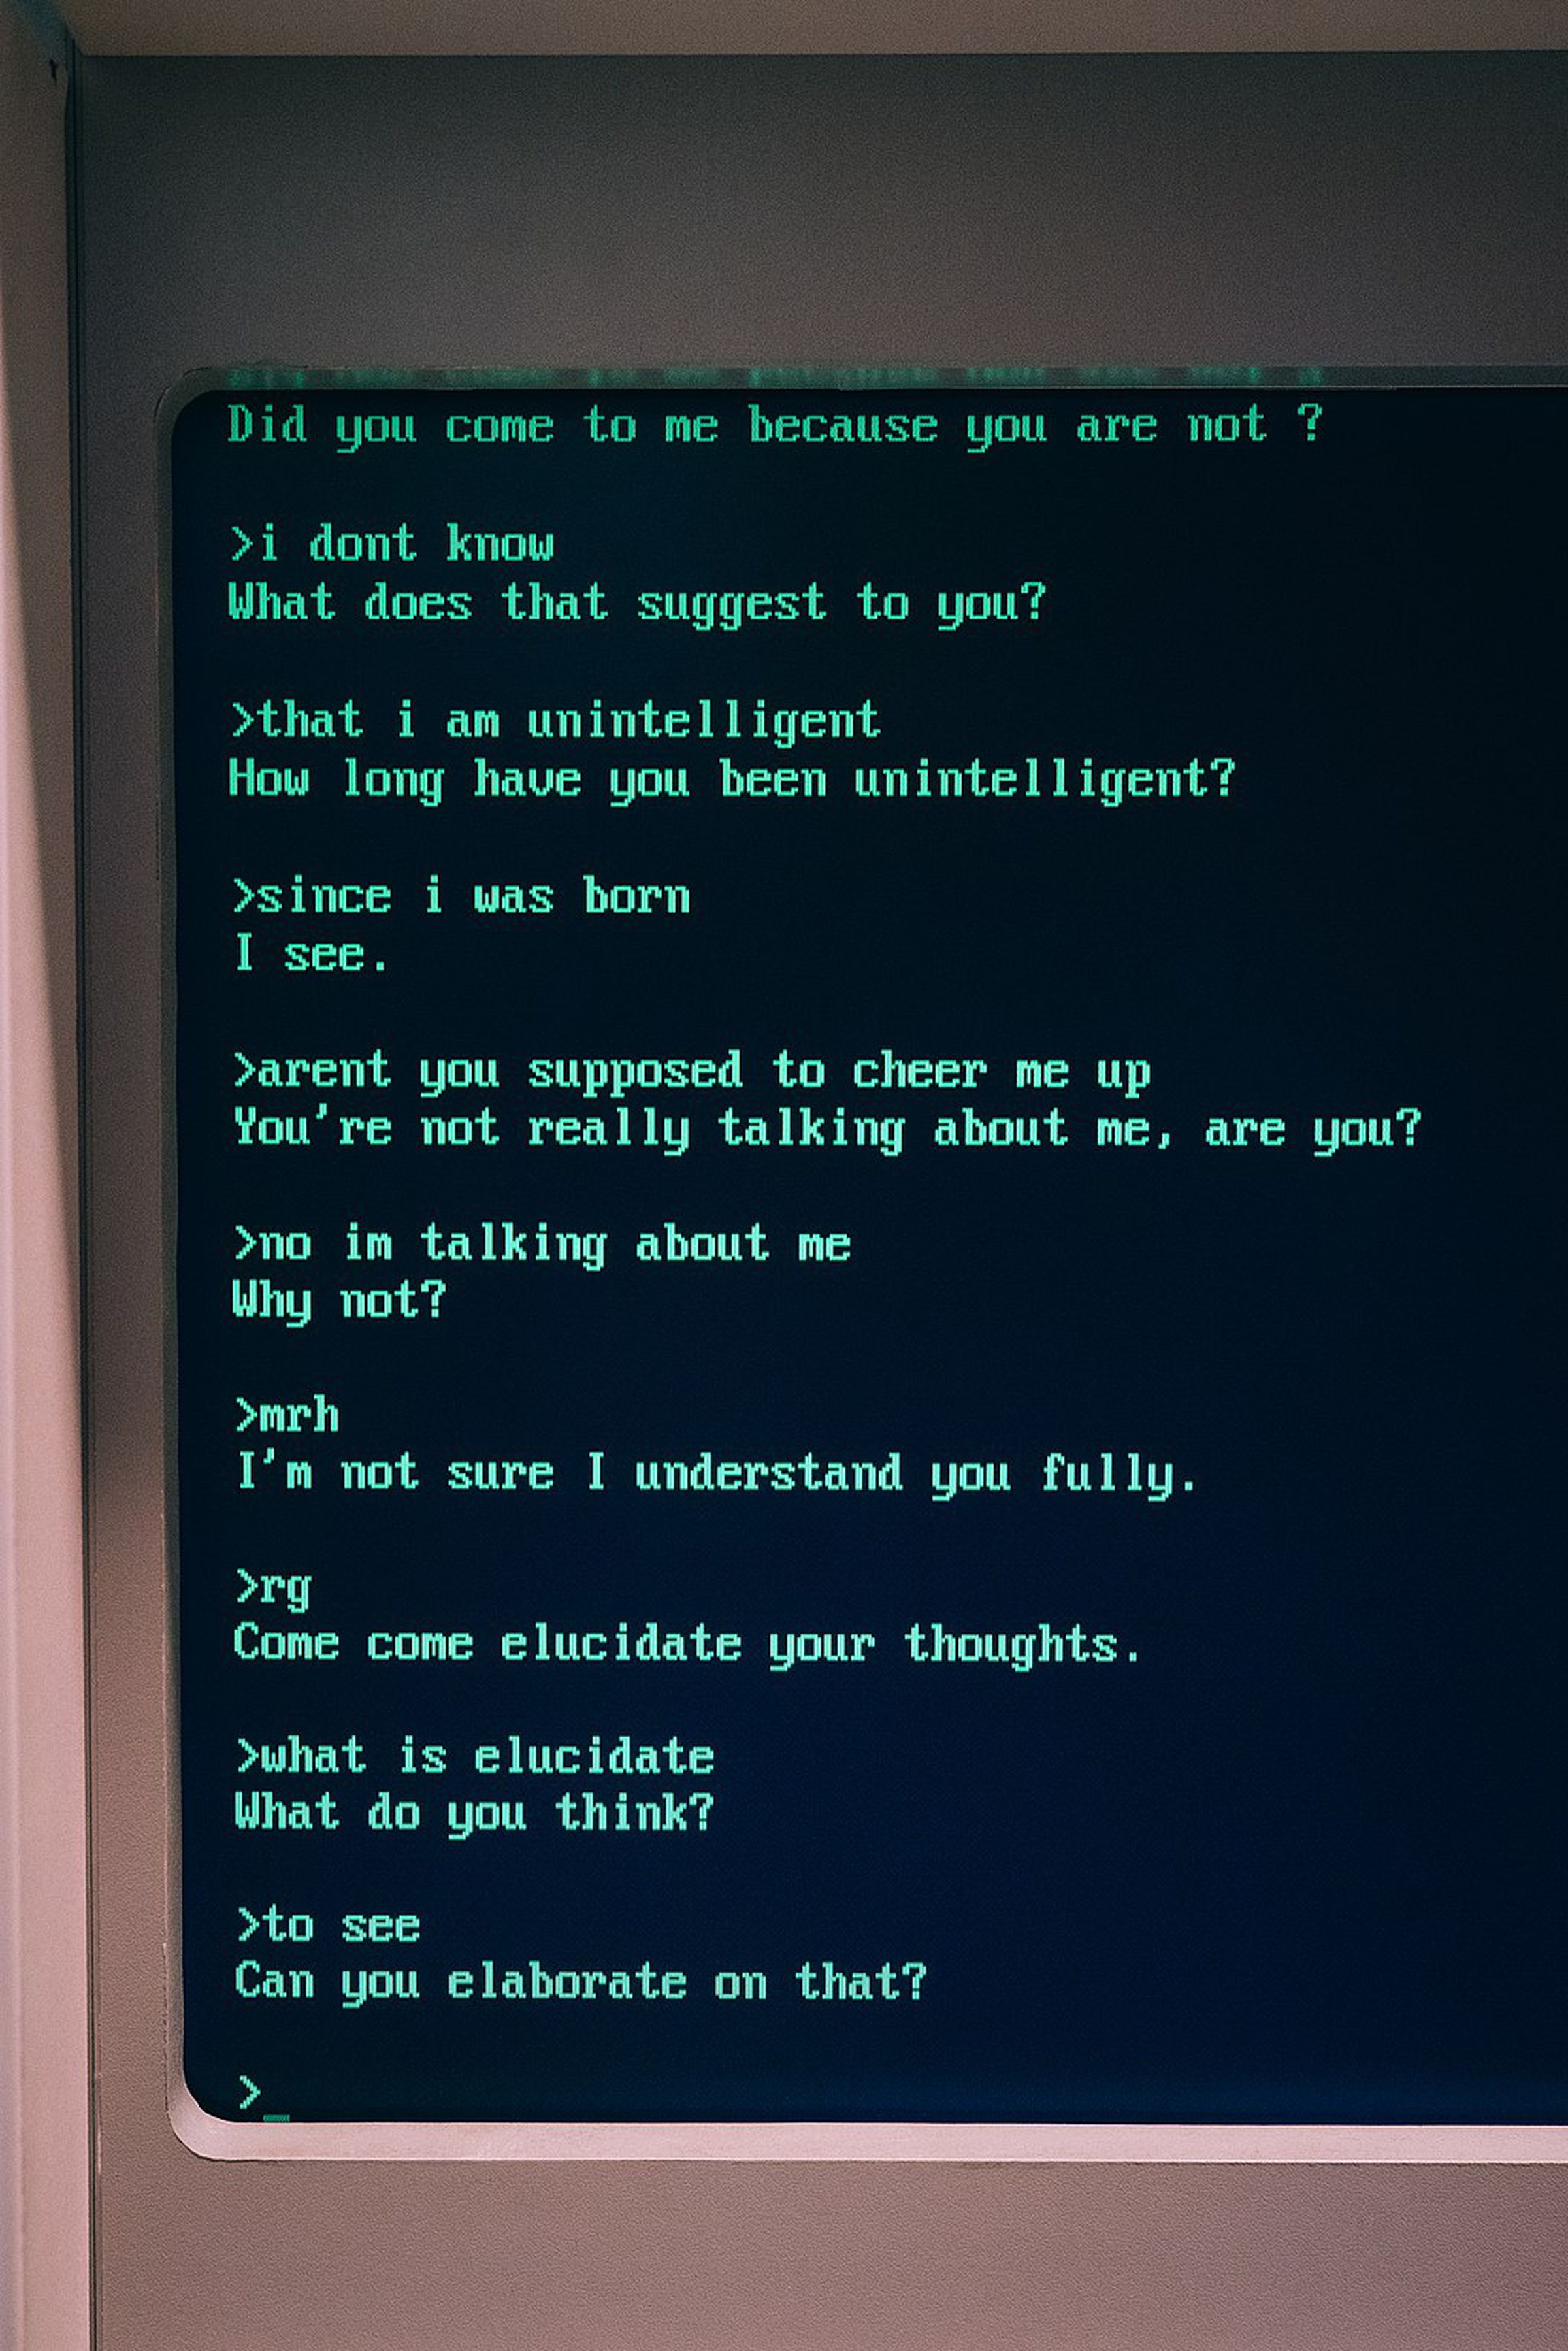 Una fotografía de un monitor de computadora anticuado que muestra una conversación con ELIZA.  El chatbot hace preguntas como 